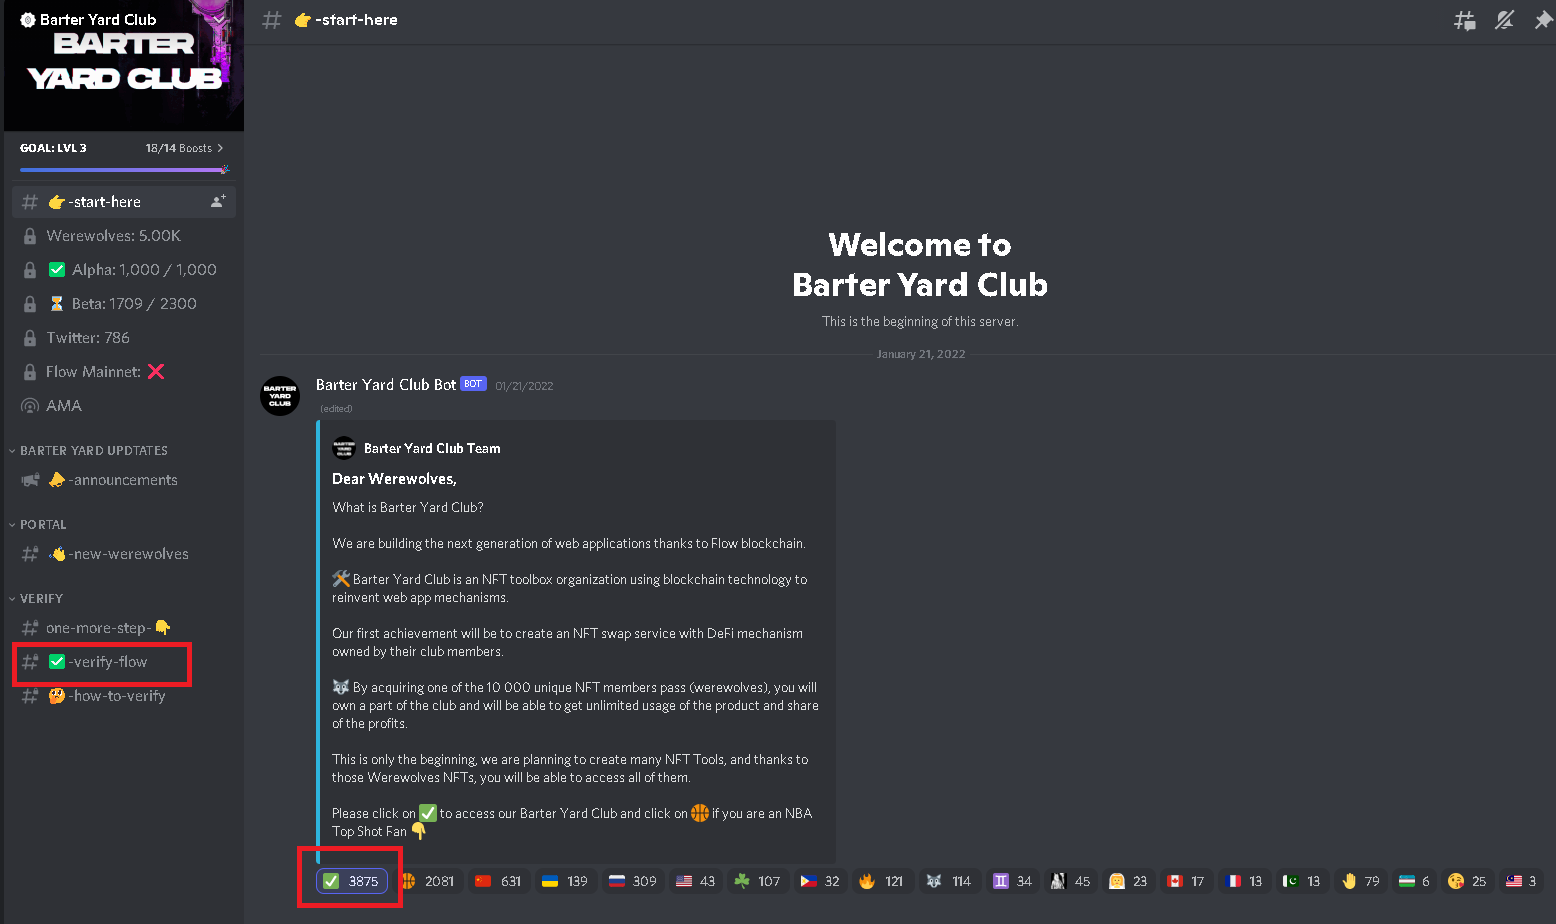 Verify Barter Yard Club on Discord